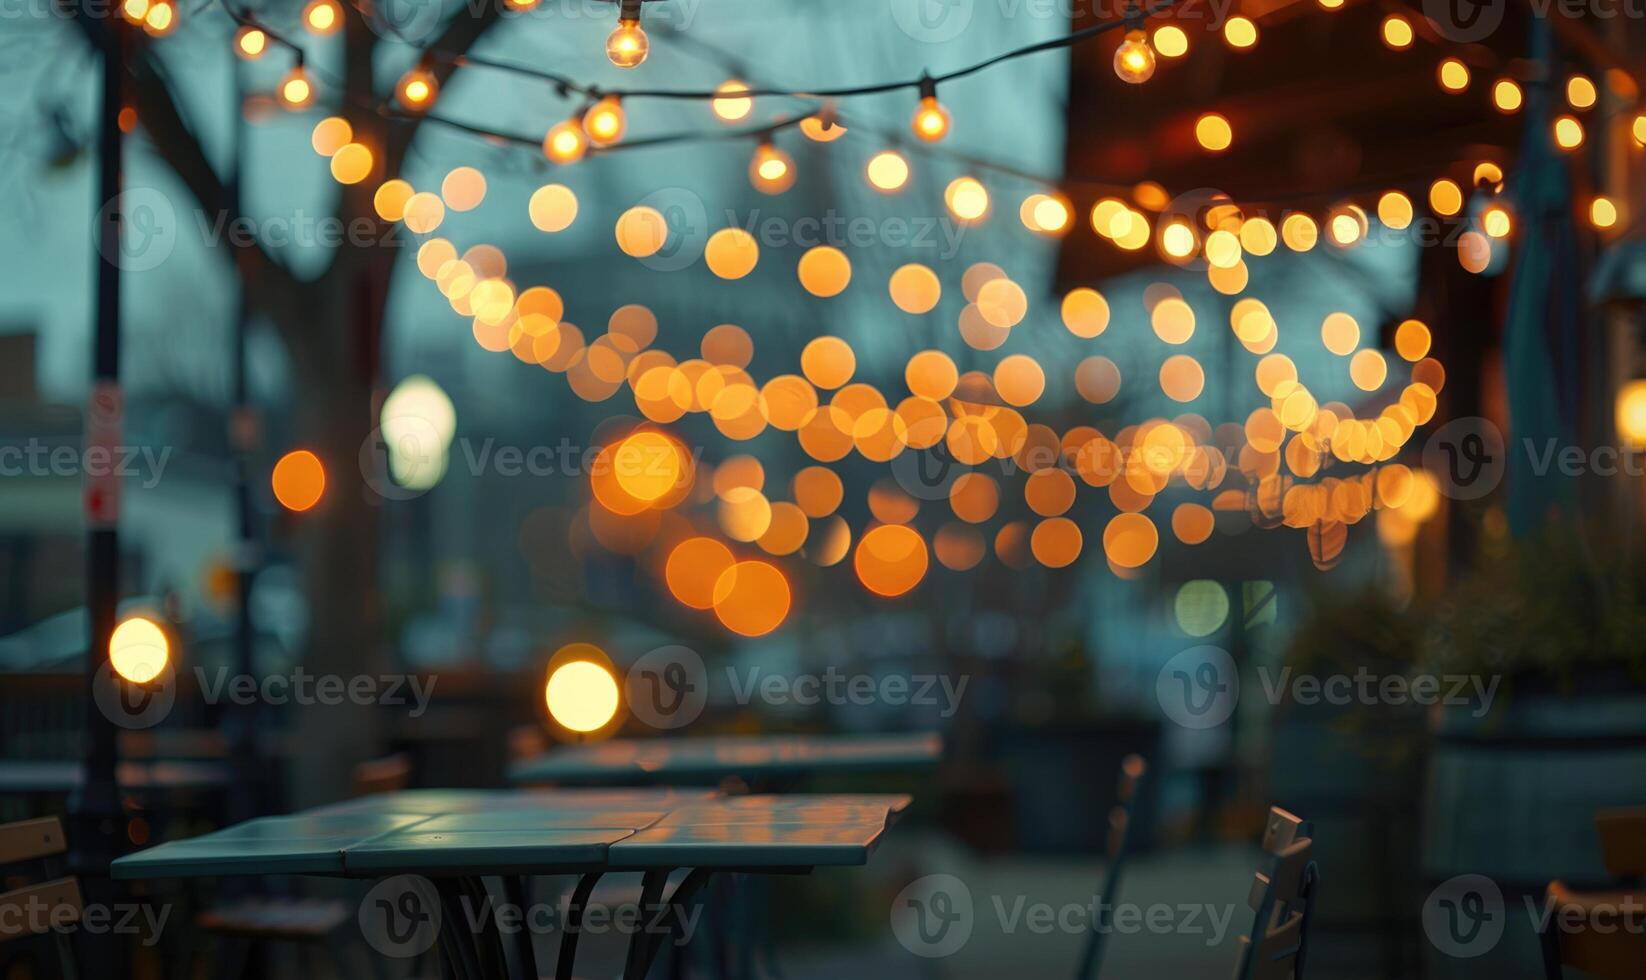 mjuk bokeh lampor skapande en romantisk atmosfär i ett intim utomhus- miljö foto